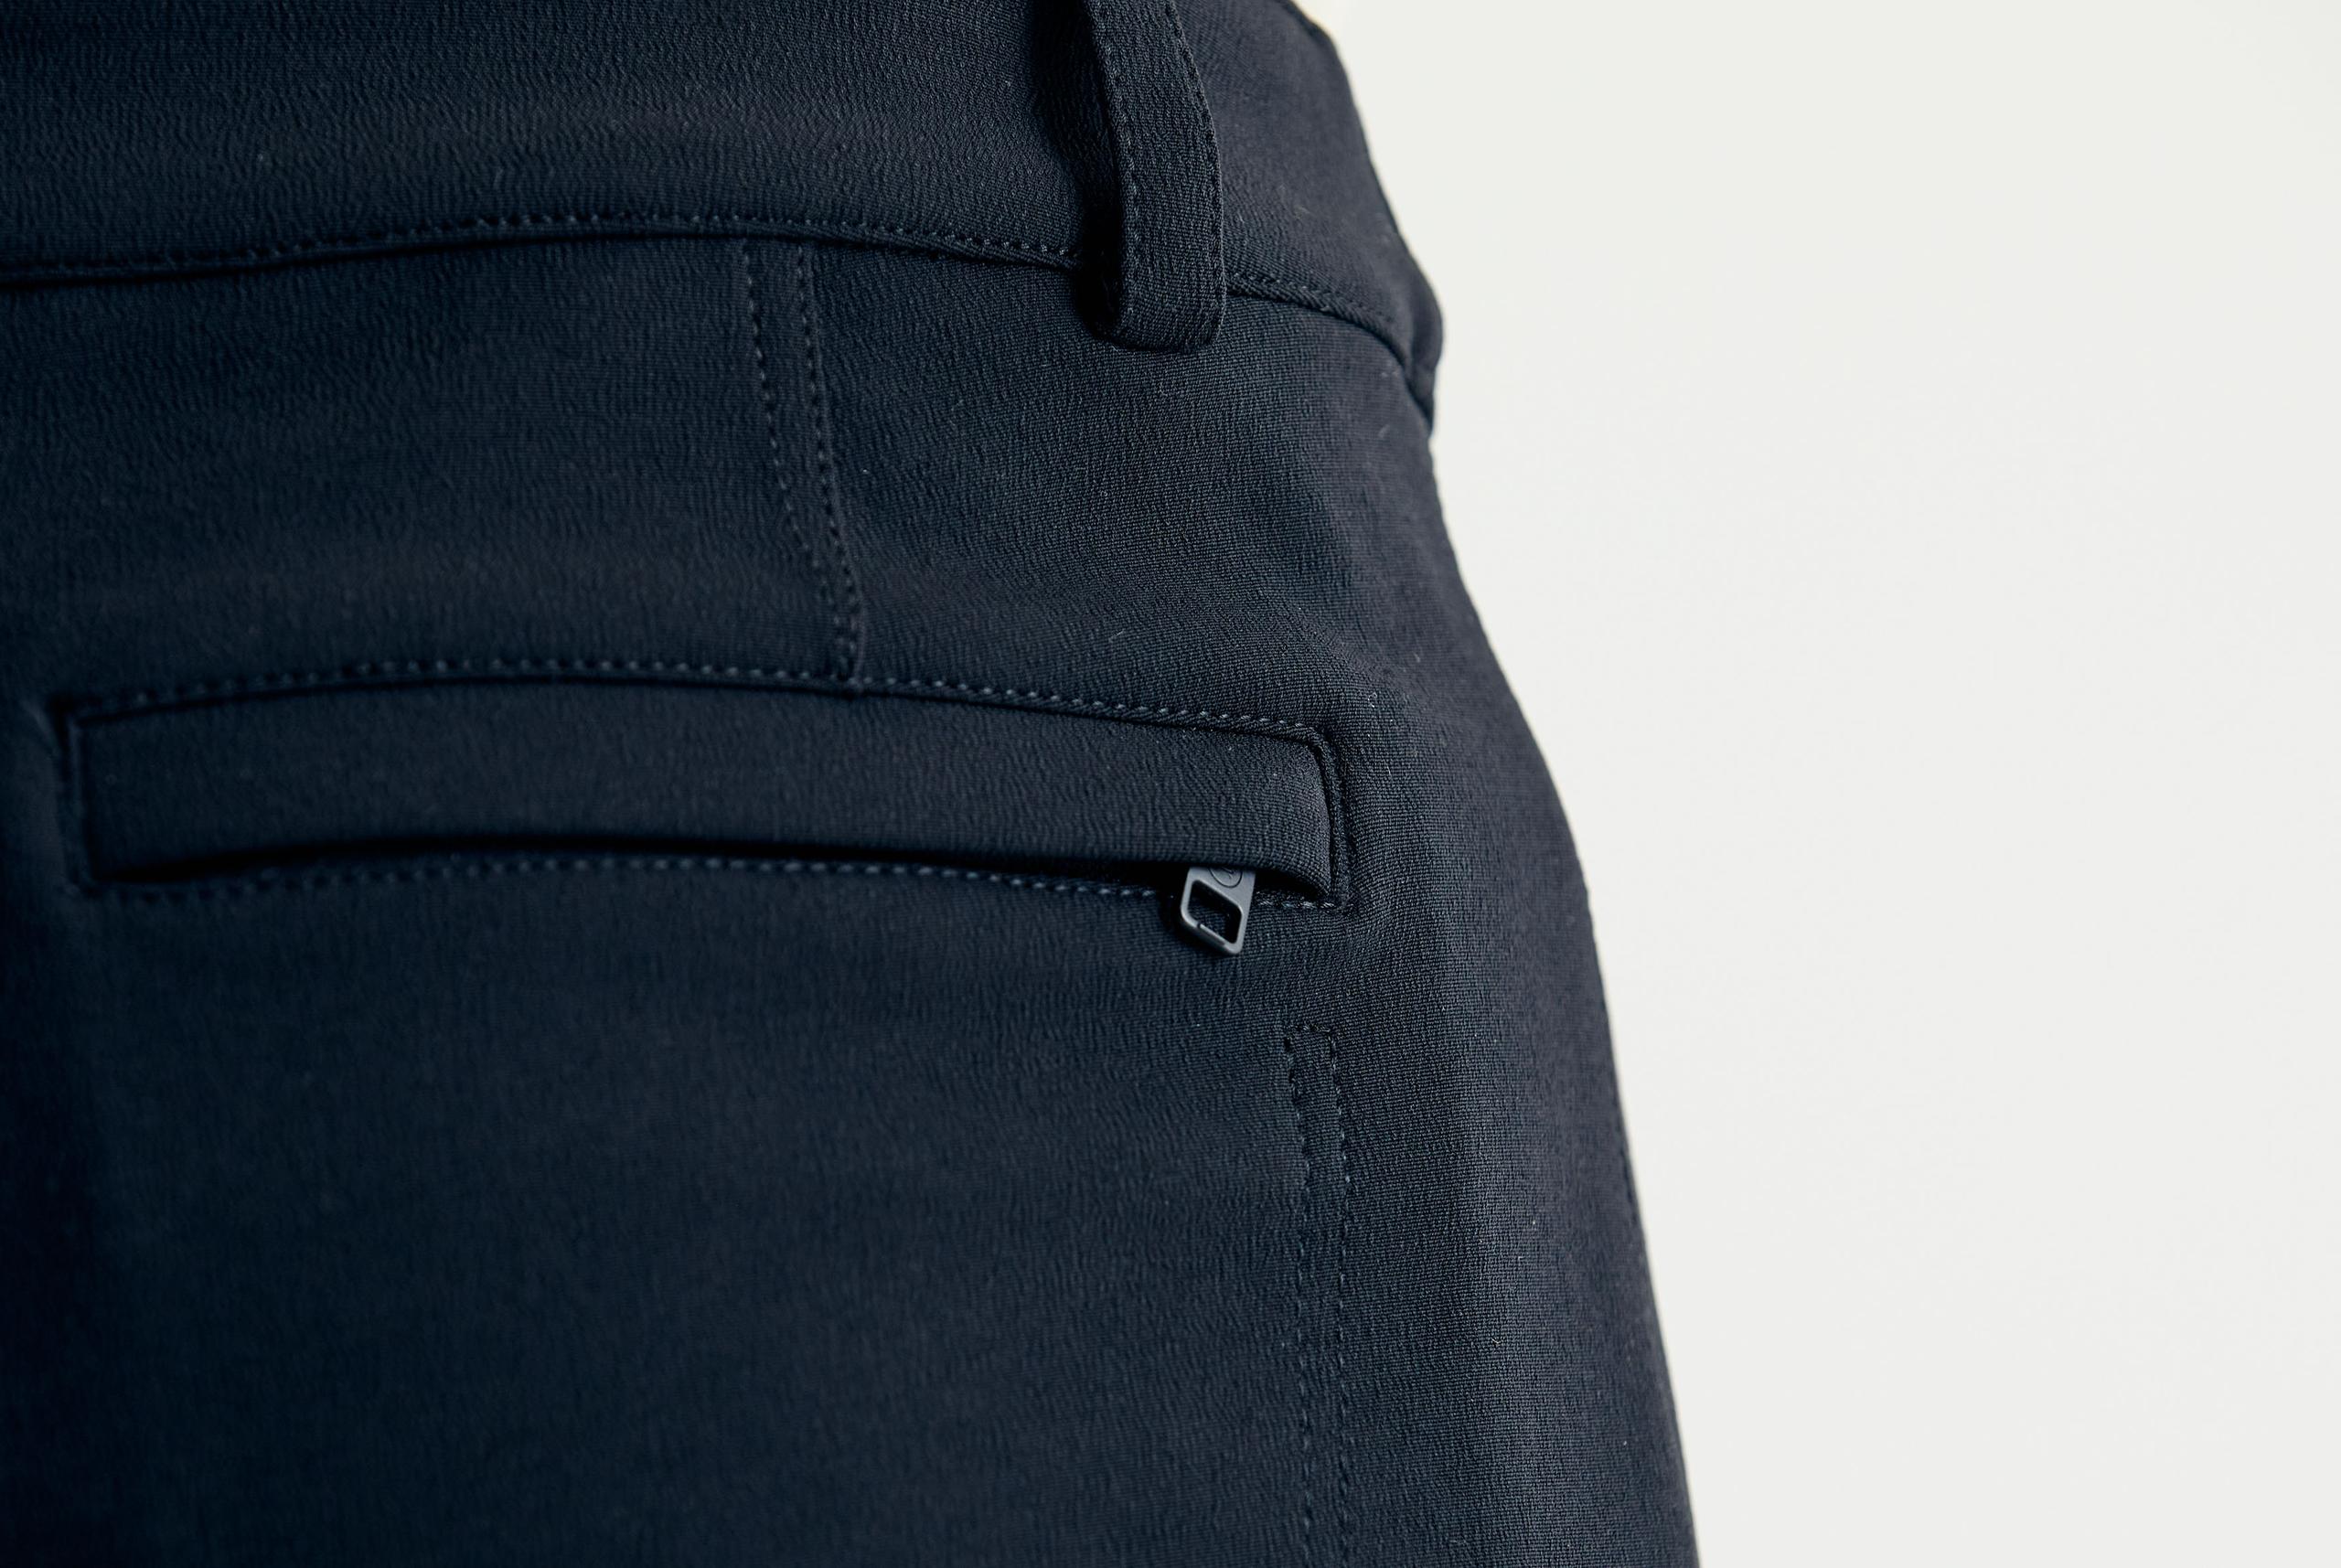 Closeup view of back pocket zipper